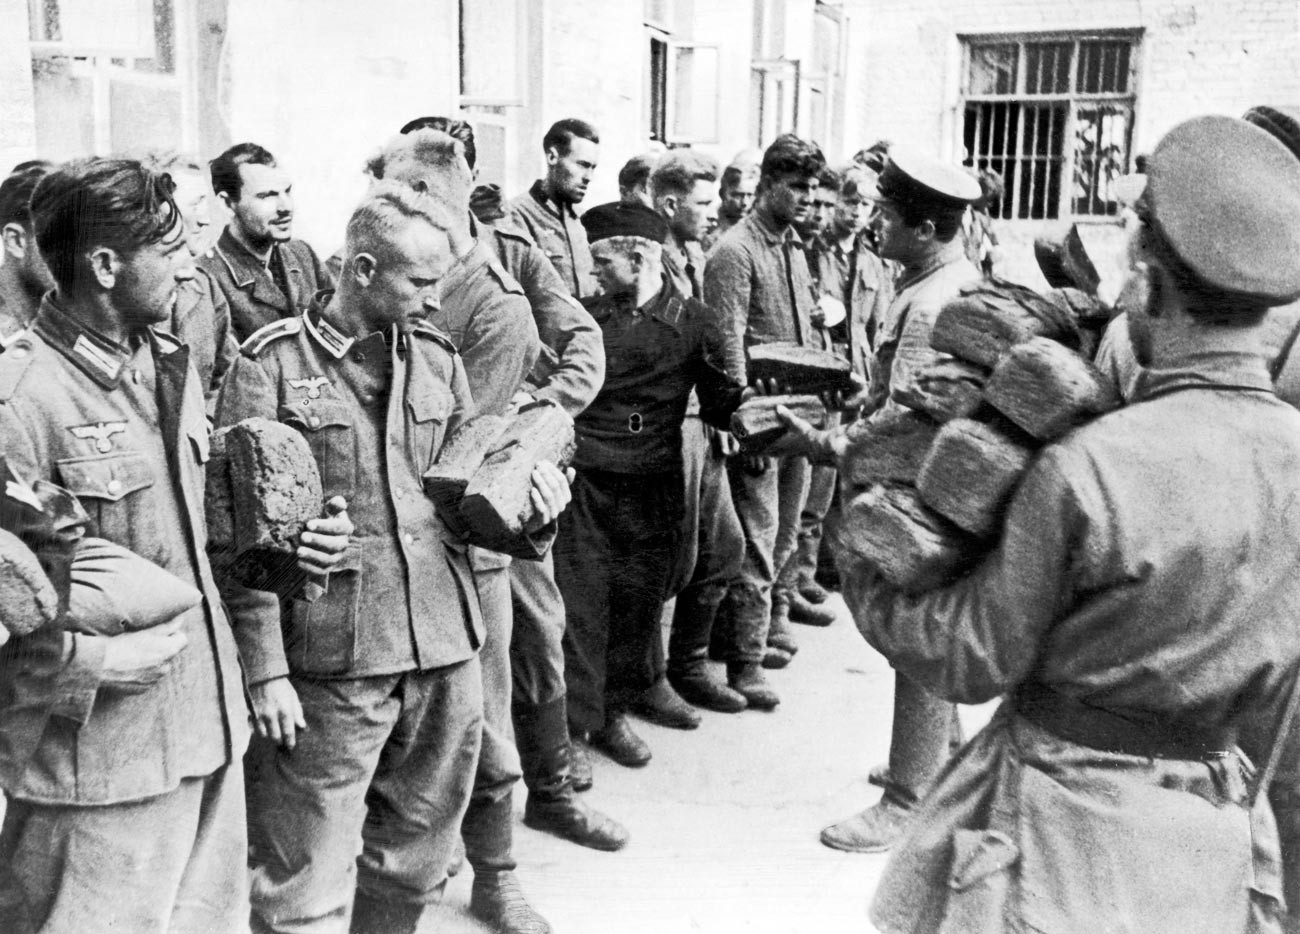 Des prisonniers de guerre allemands capturés par l'Armée rouge pendant la Seconde Guerre mondiale, 9 août 1941